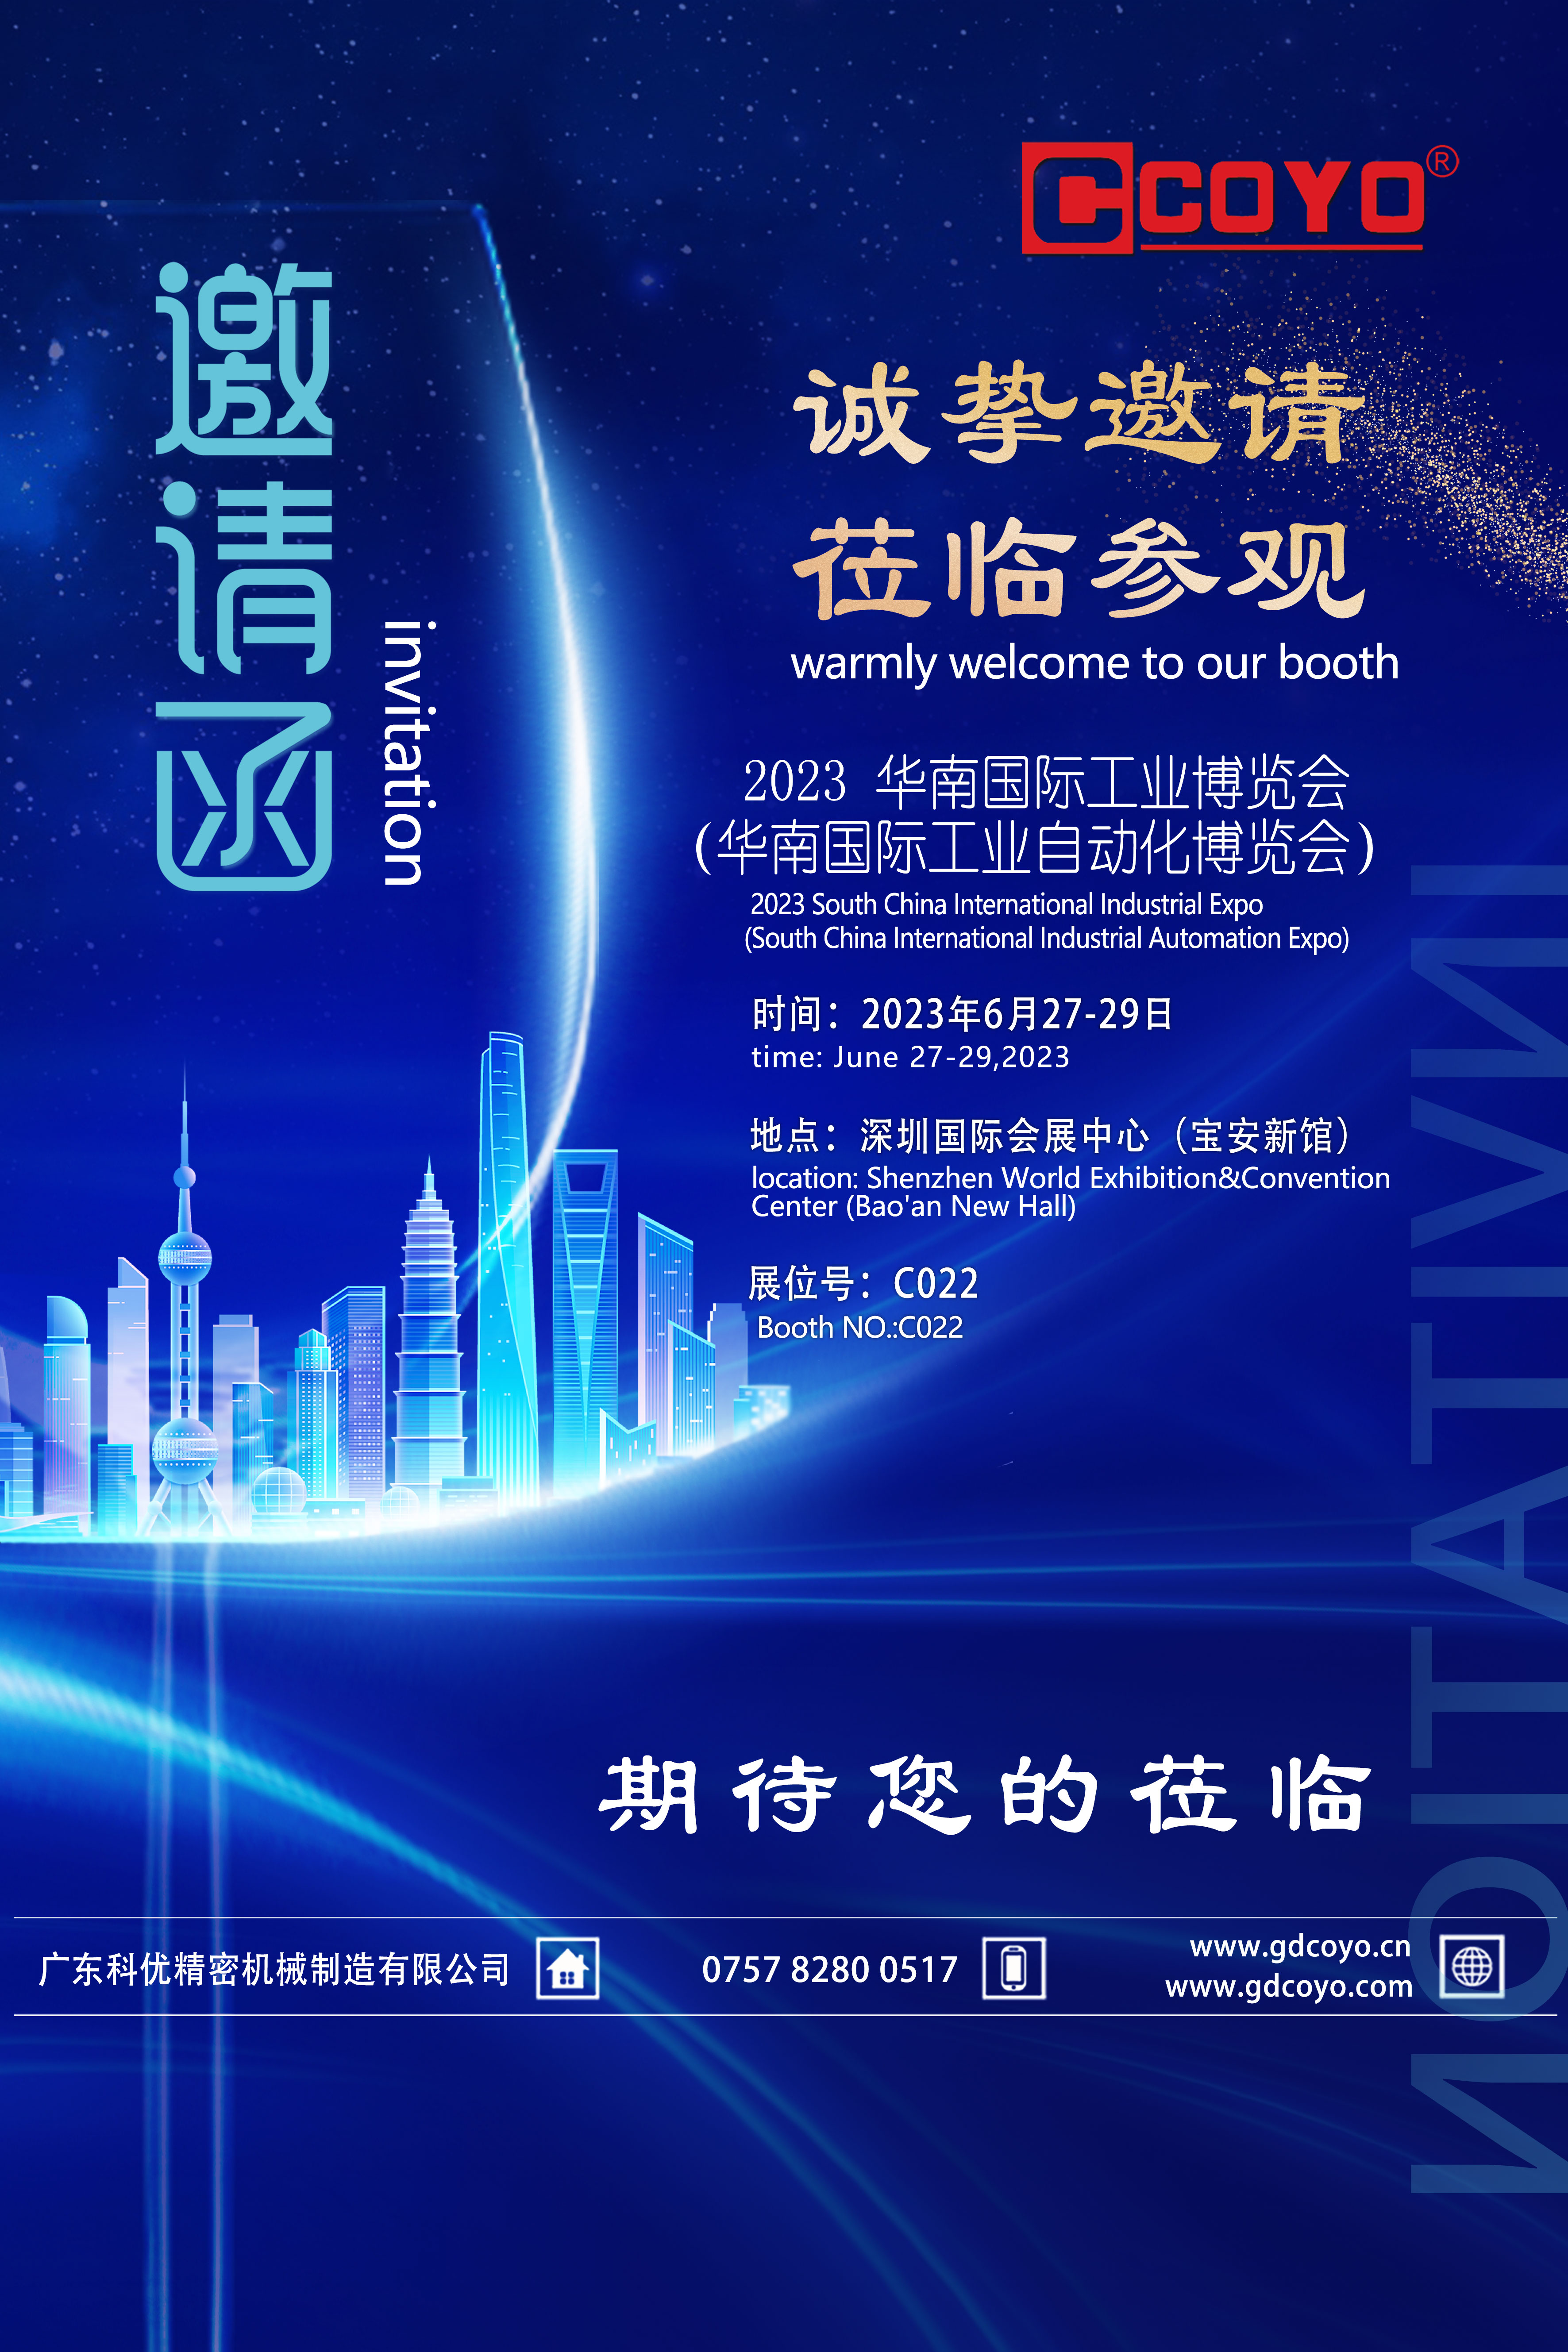 广东科优诚挚邀请您参加华南国际工业博览会